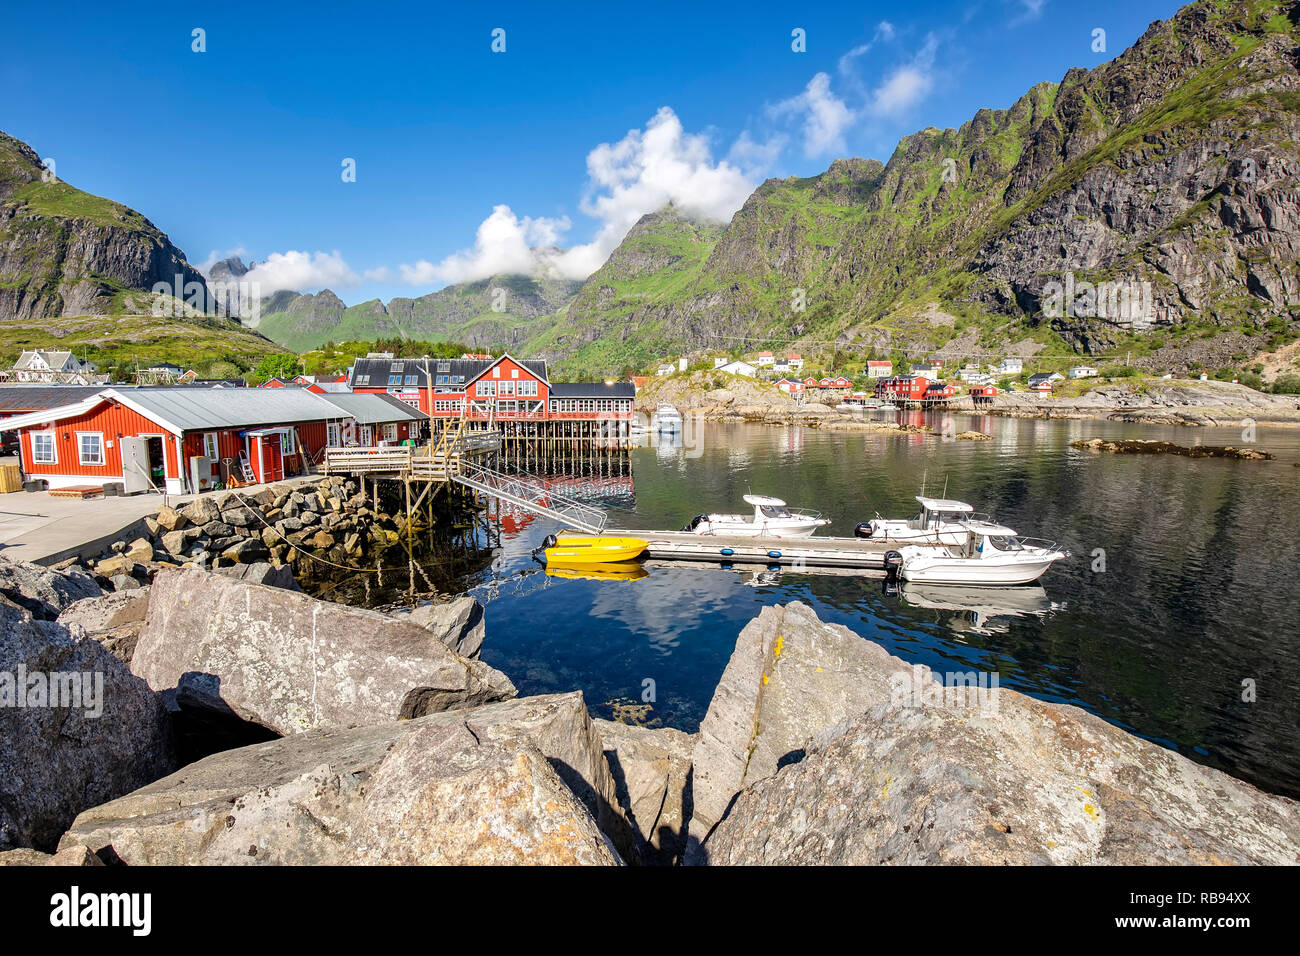 Angeln Bucht mit Booten und Rorbu in kleine norwegische Dorf. Lofoten, Norwegen Stockfoto